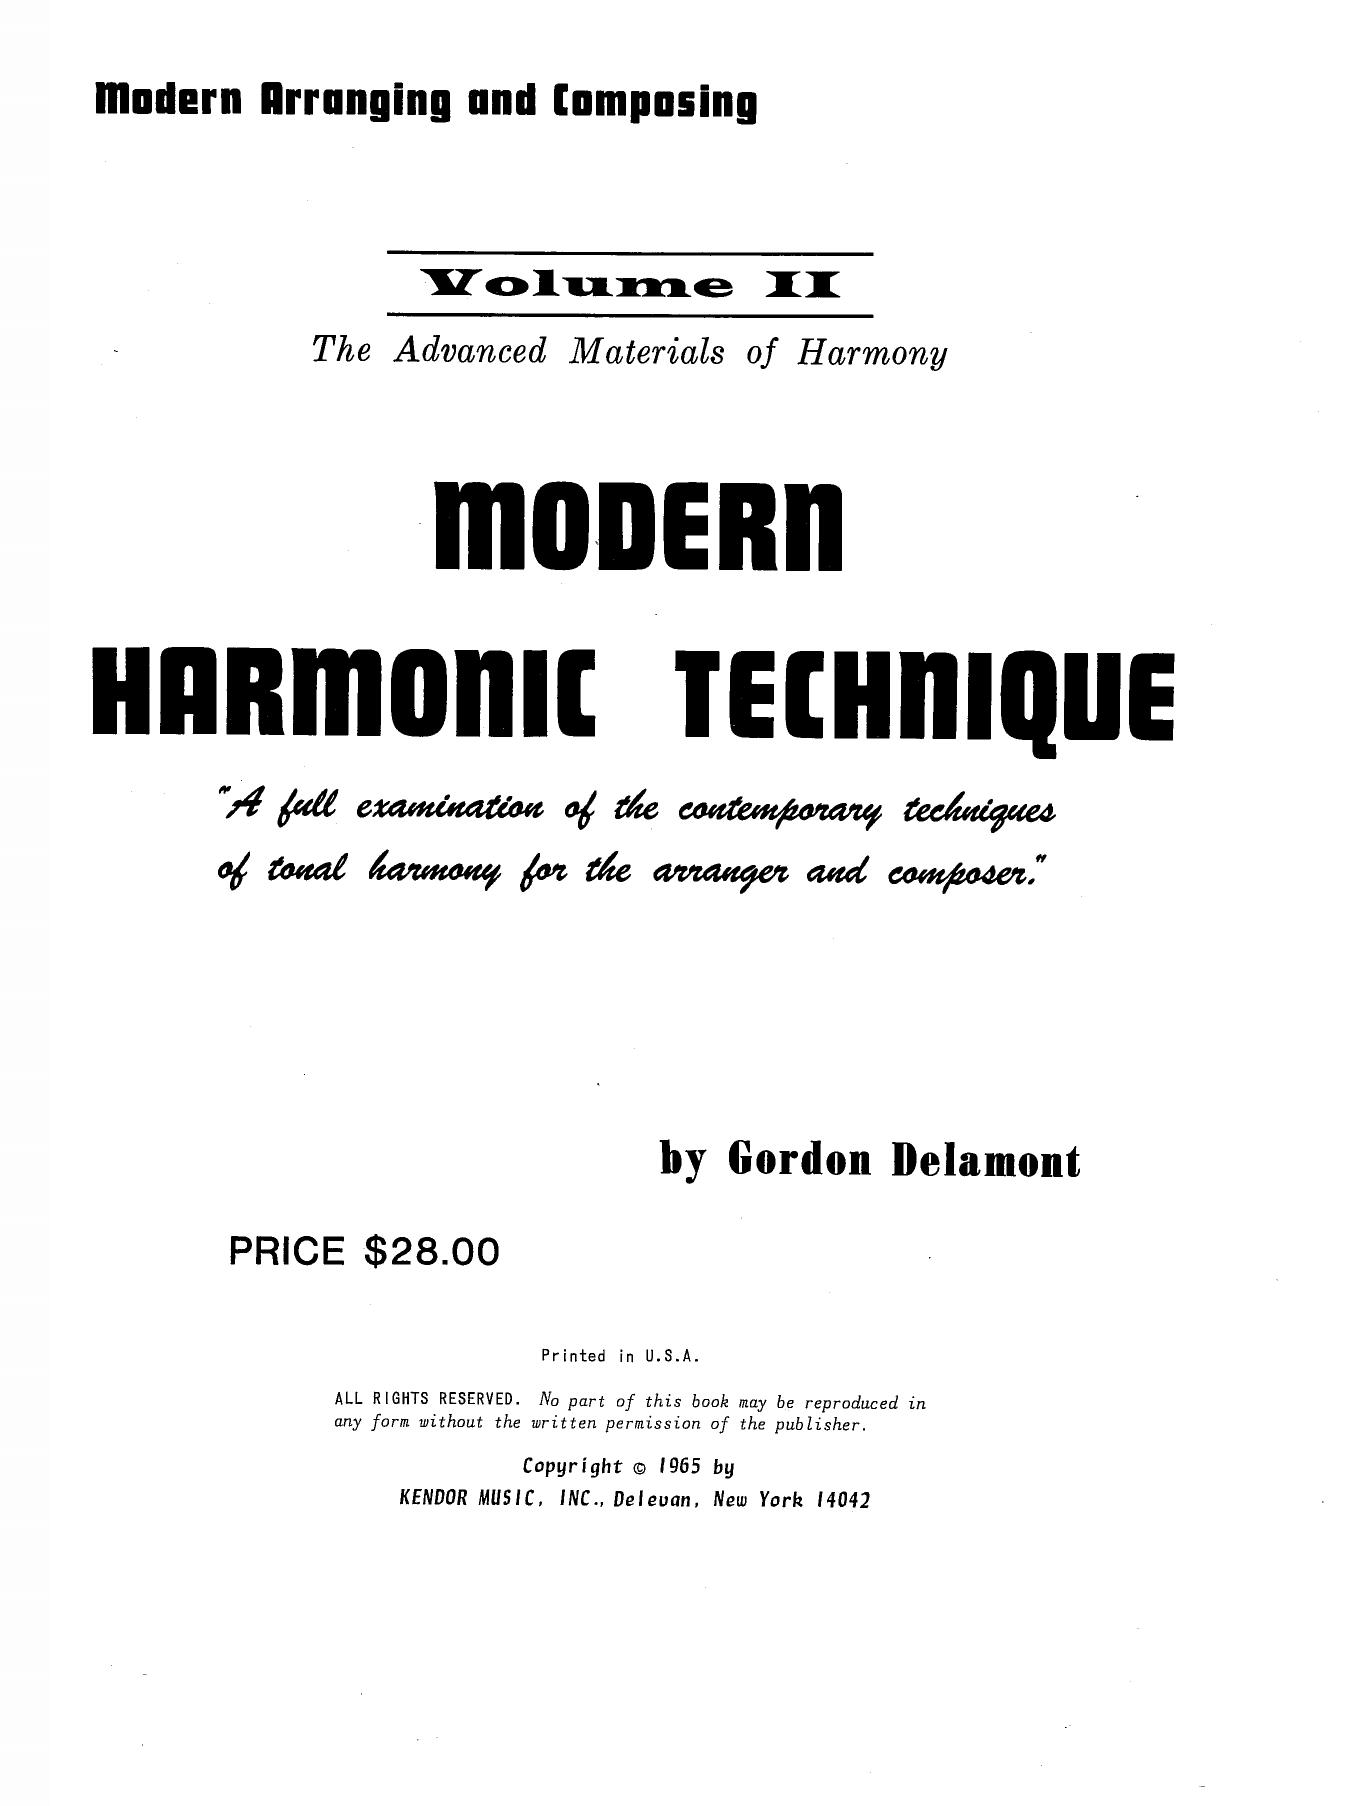 Download Gordon Delamont Modern Harmonic Technique, Volume 2 Sheet Music